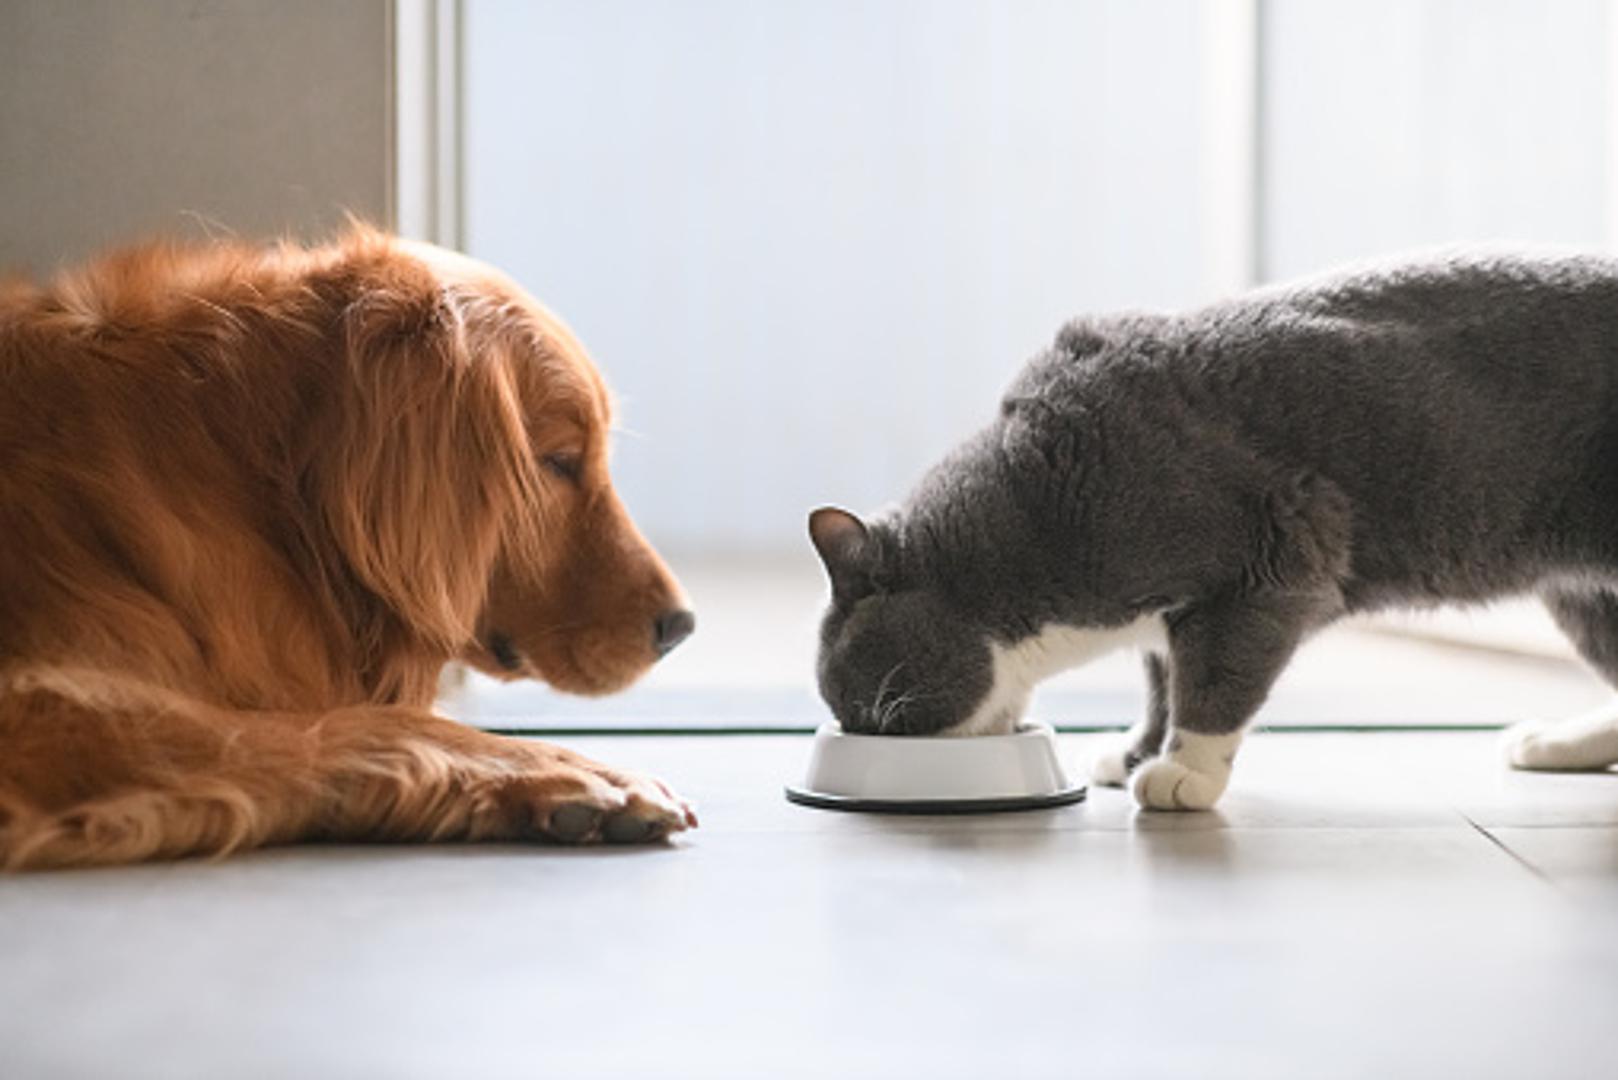 Posudice za hranu vaših ljubimaca- Pravo su leglo bakterija i to može naštetiti zdravlju vašeg psa ili mačke. Posudice perite svaki dan u perilici posuđa ili ako ih perete u sudoperu sa spužvom, najmanje jednom tjedno ih namočite u otopinu s izbjeljivačem (jedna žlica na litru vode) i držite potopljene nekih desetak minuta.